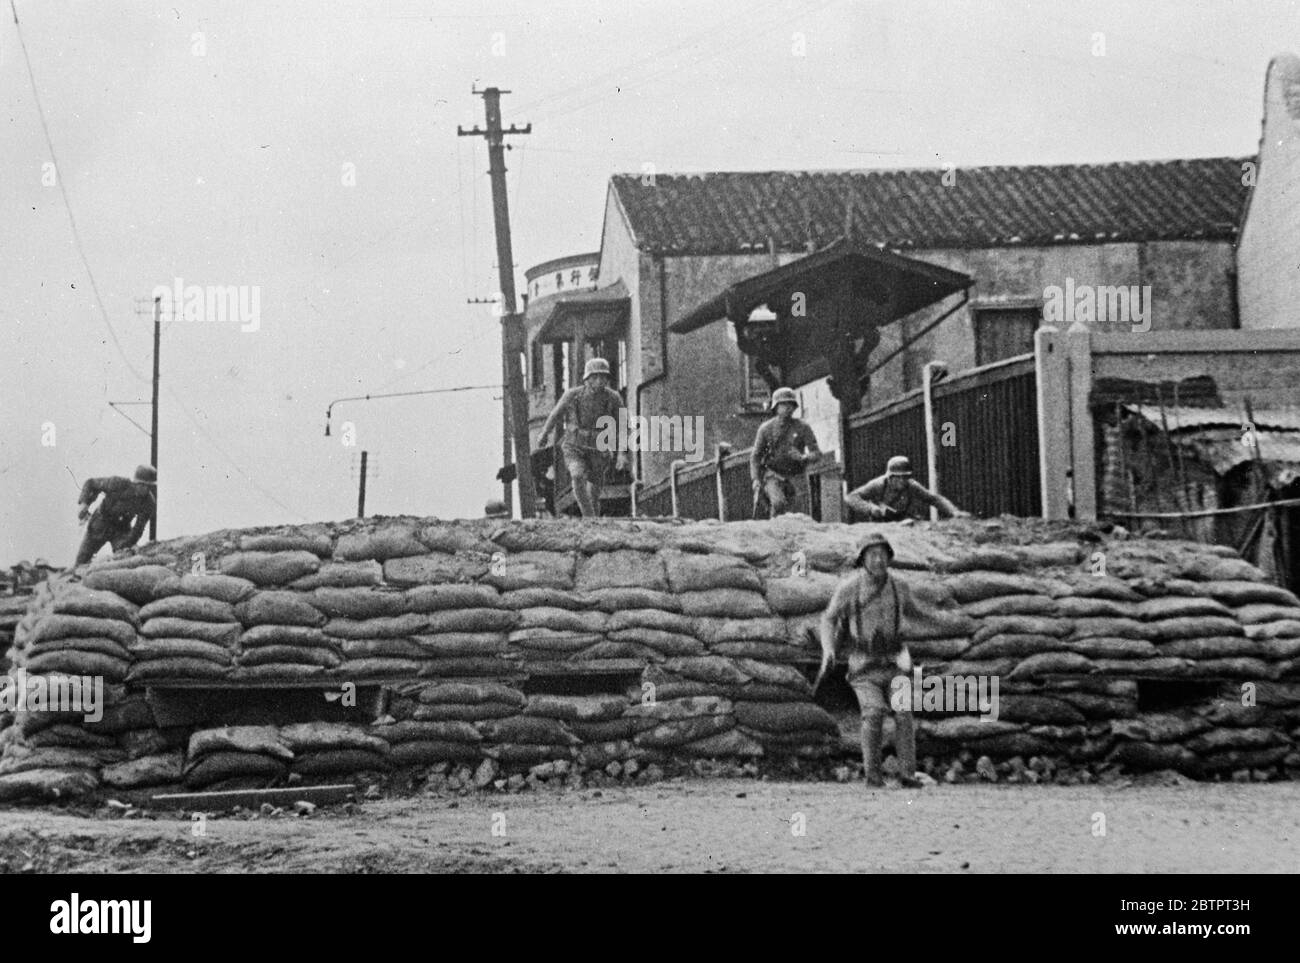 Chinesische Truppen überwinden ein Hindernis. Chinesische Soldaten, die eine Sandsack-Barrikade "in ihrem Schritt" Trommler gegen die Japaner am Rande von Shanghai kämpfen. 25. November 1937 Stockfoto